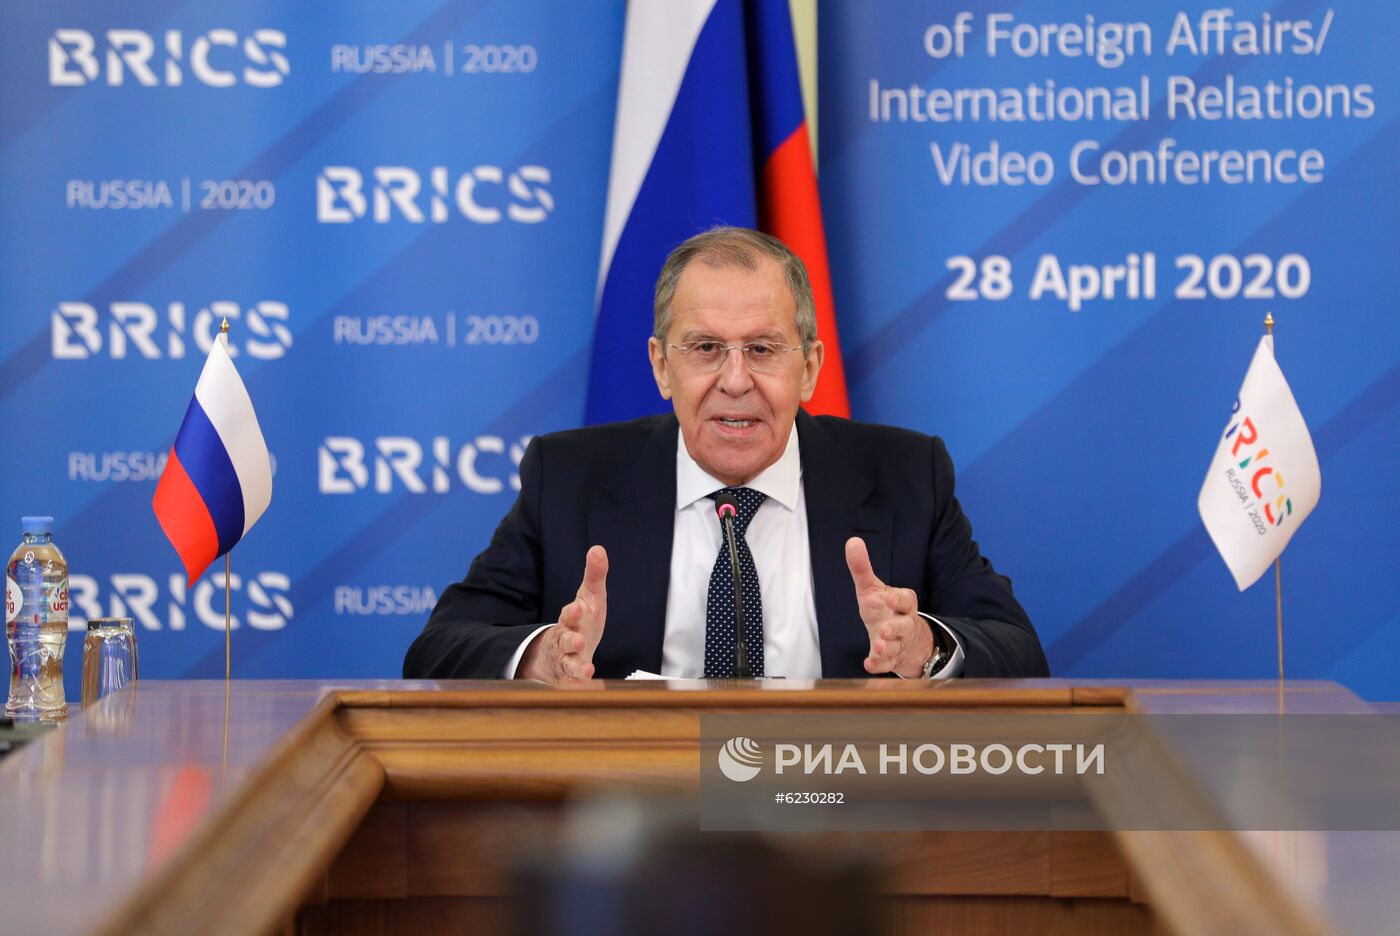 Глава МИД РФ С. Лавров выступил на онлайн-встрече со странами БРИКС